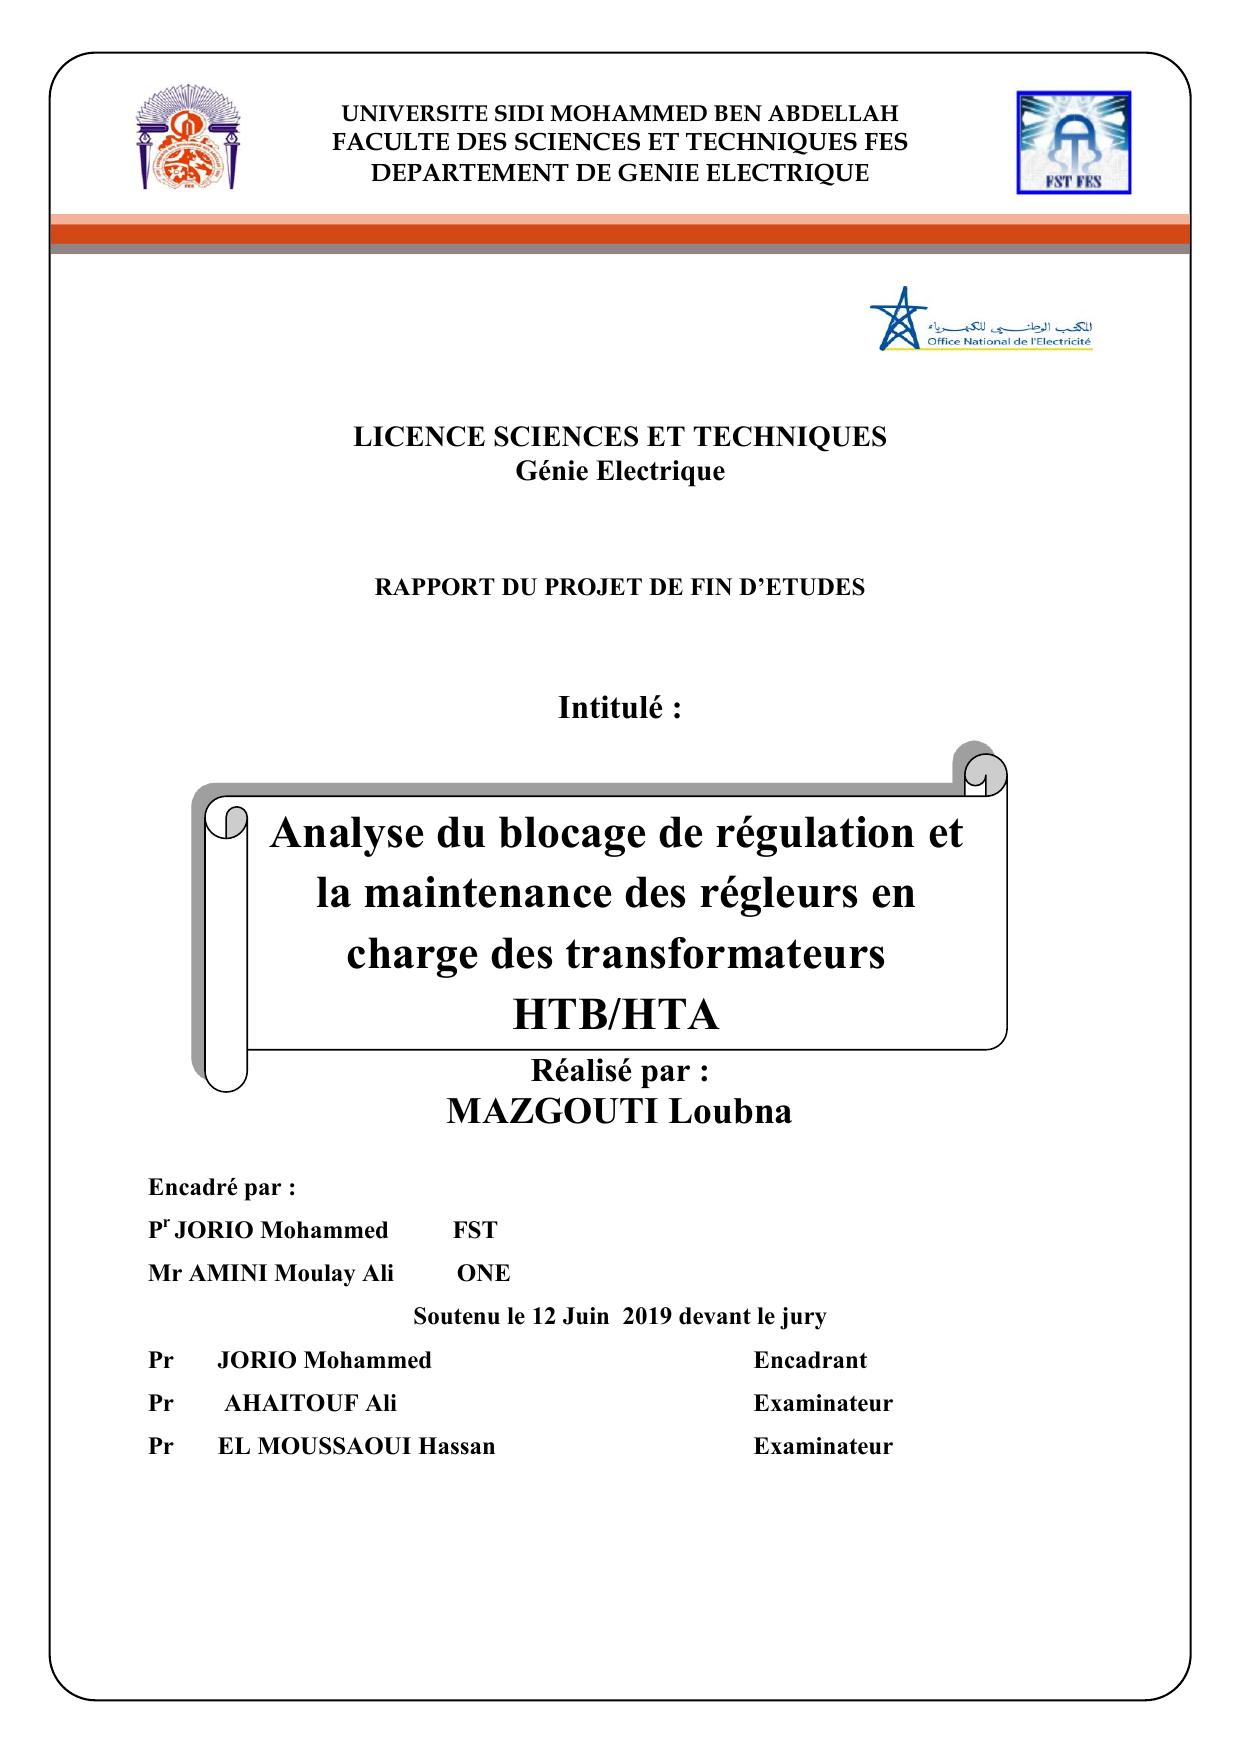 Analyse du blocage de régulation et la maintenance des régleurs en charge des transformateurs HTB/HTA